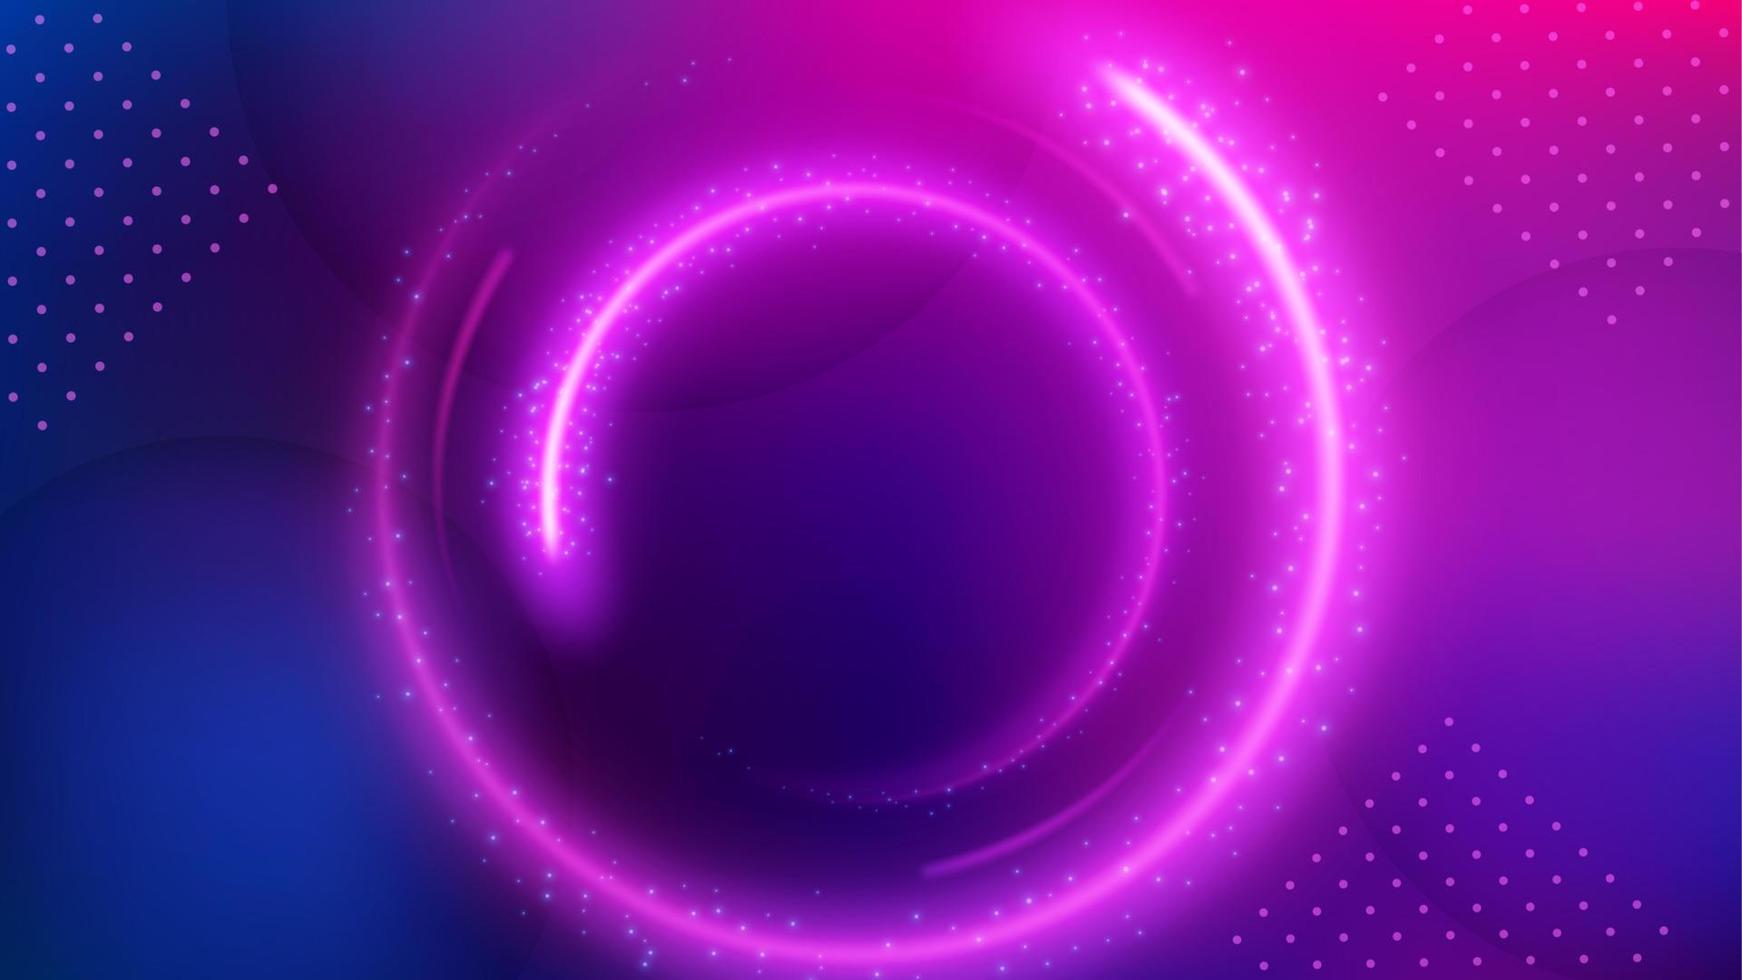 ljus ringa rörelse bakgrund, elegant violett ljus. widescreen vektor illustration